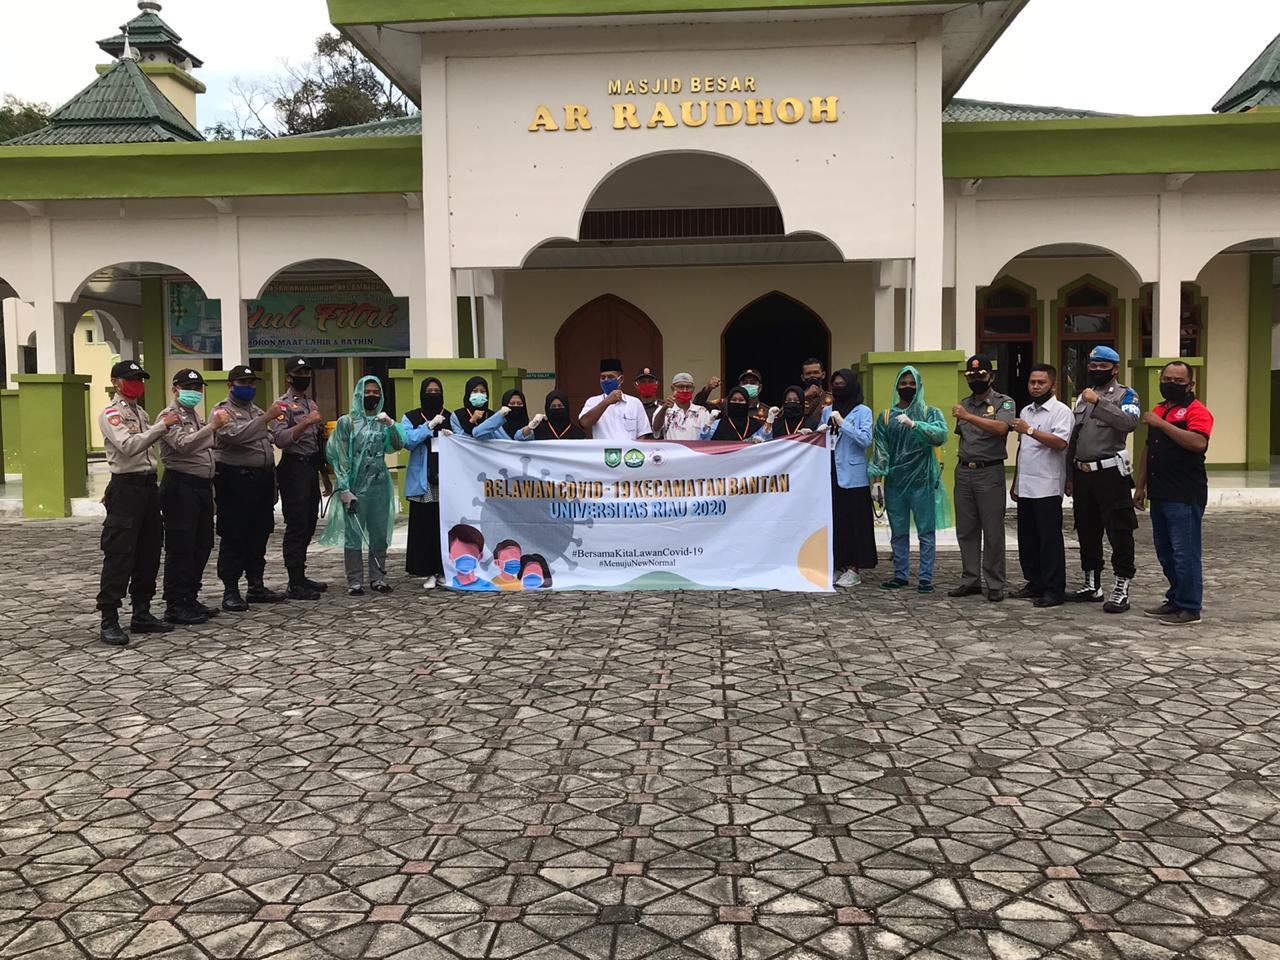 Relawan Universitas Riau yang Tergabung dalam Satgas Covid-19 Kecamatan Bantan Siap Menuju New Normal 2020